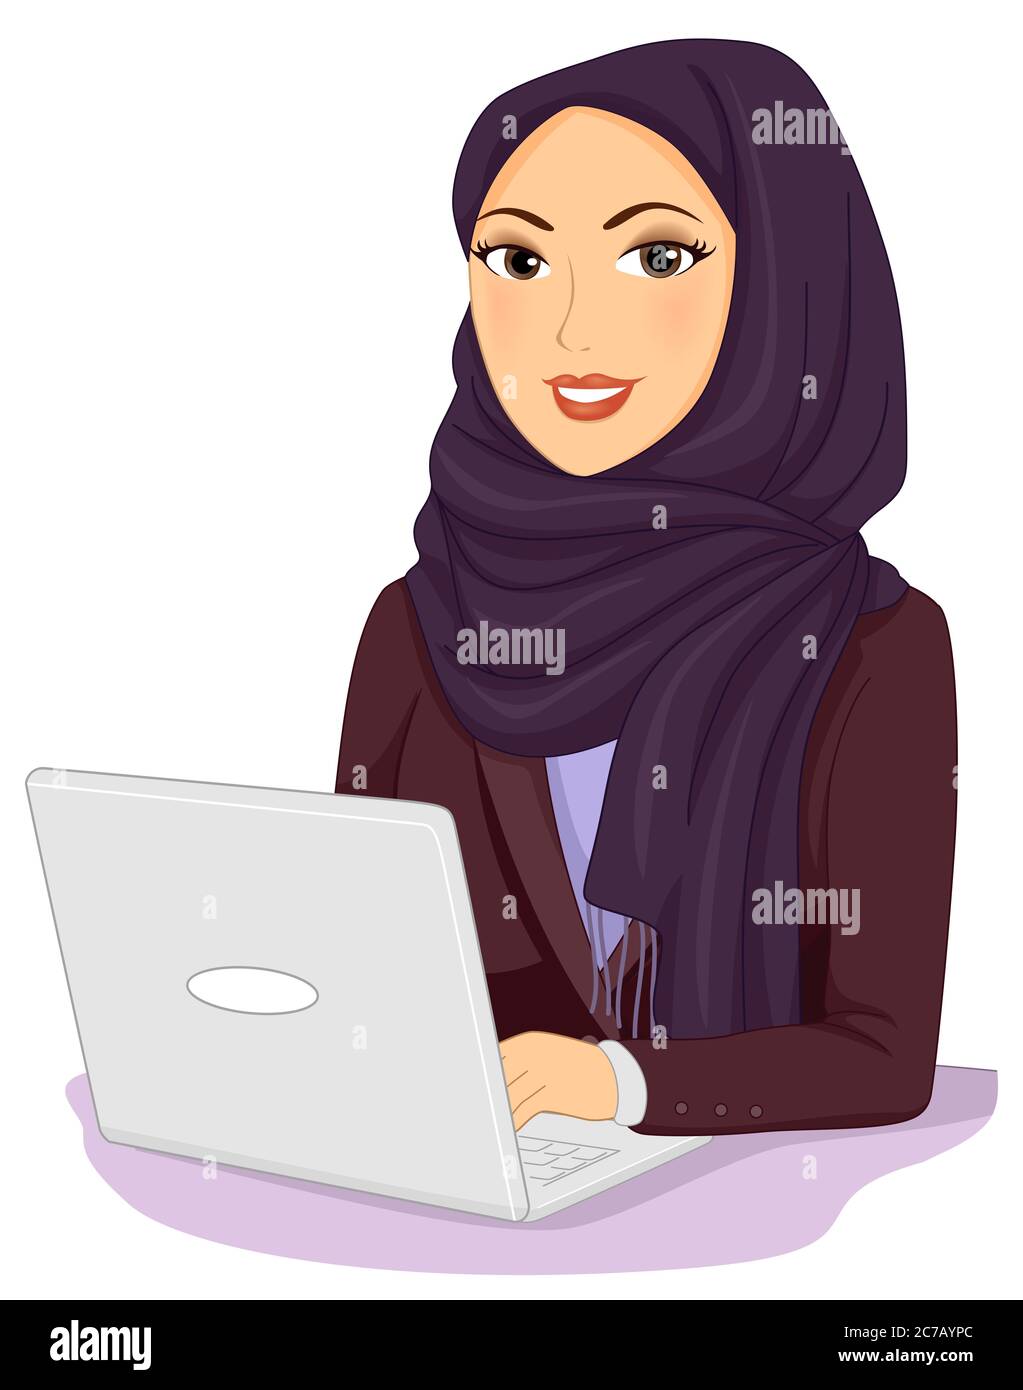 Illustration eines Mädchens, das Hijab und Business Kleidung mit Laptop  trägt Stockfotografie - Alamy